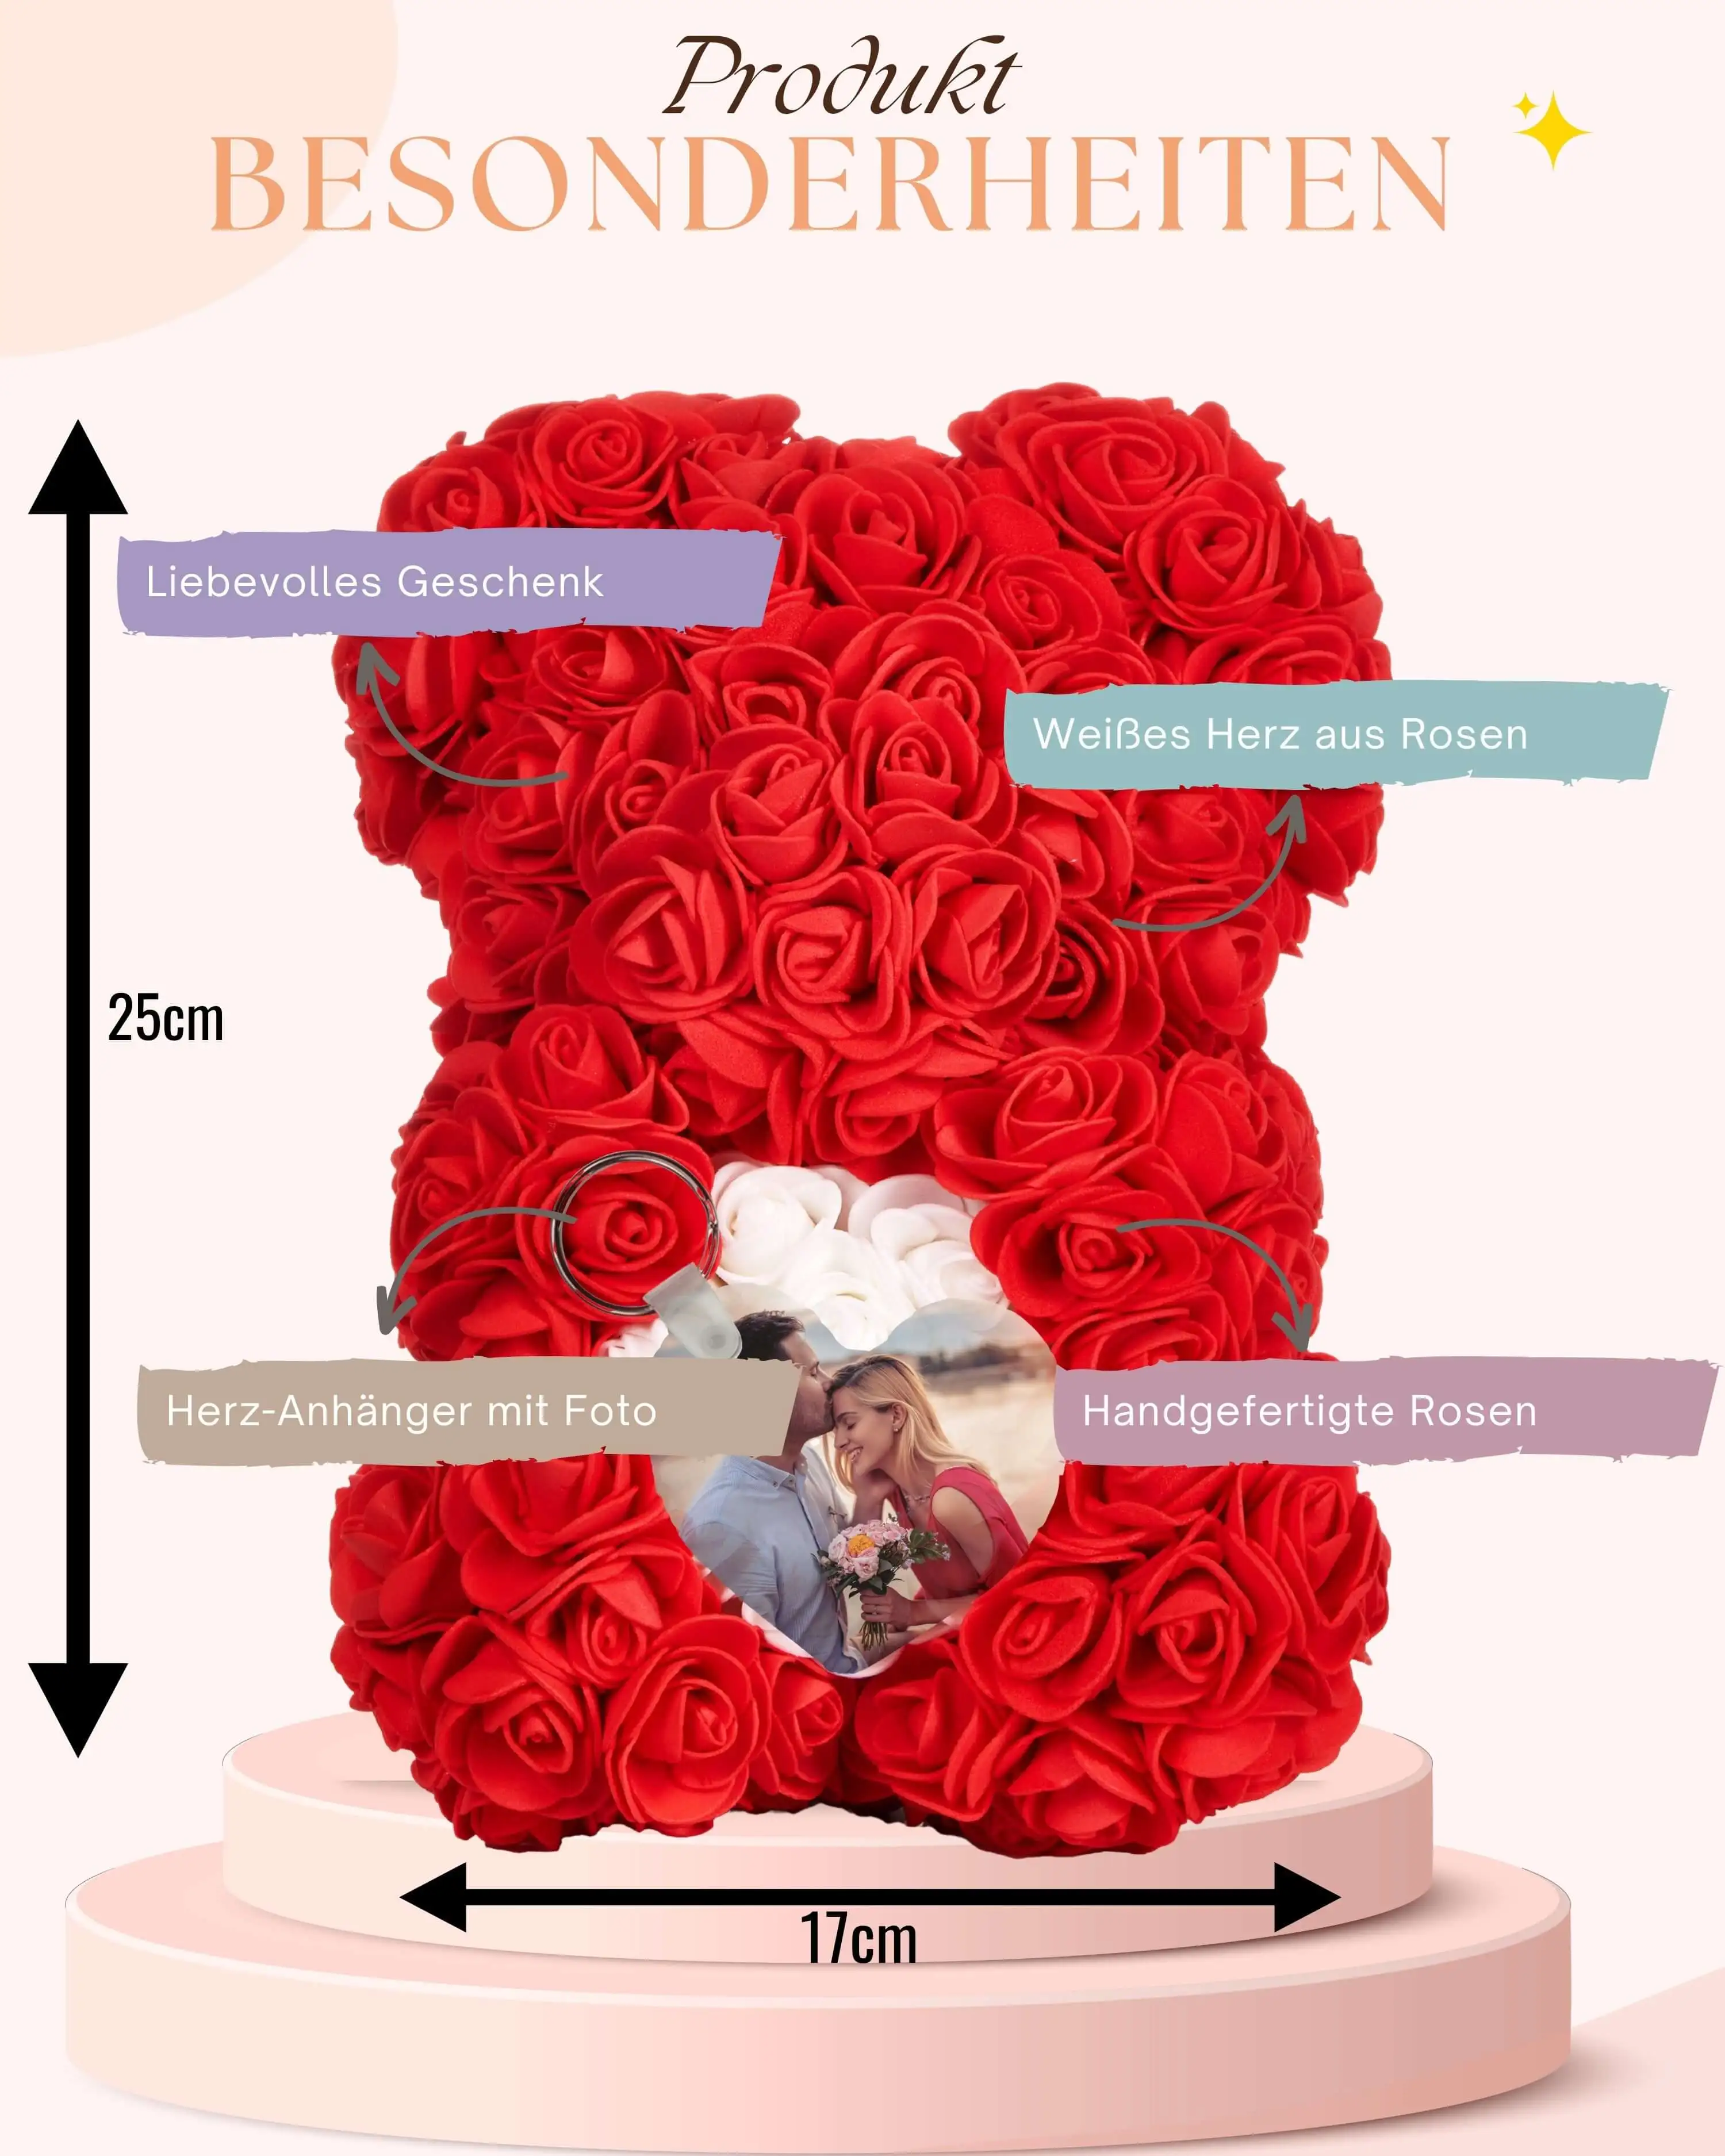 Personalisierter Rosenbär mit Fotoanhänger